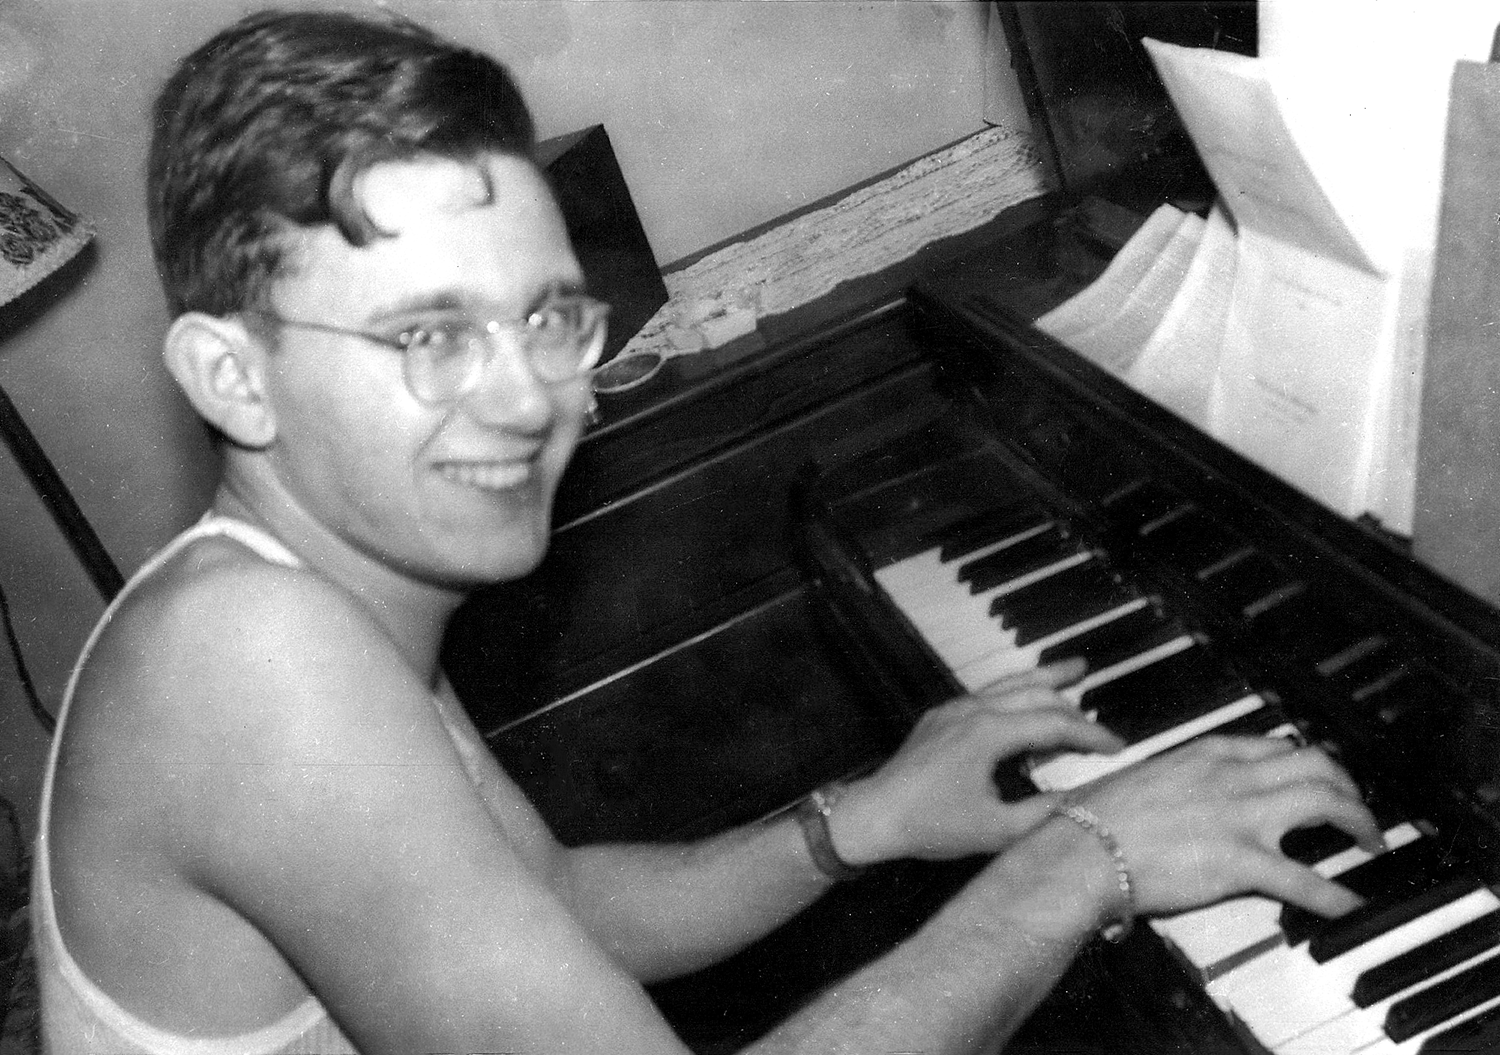 Young Arthur Secunda at Piano